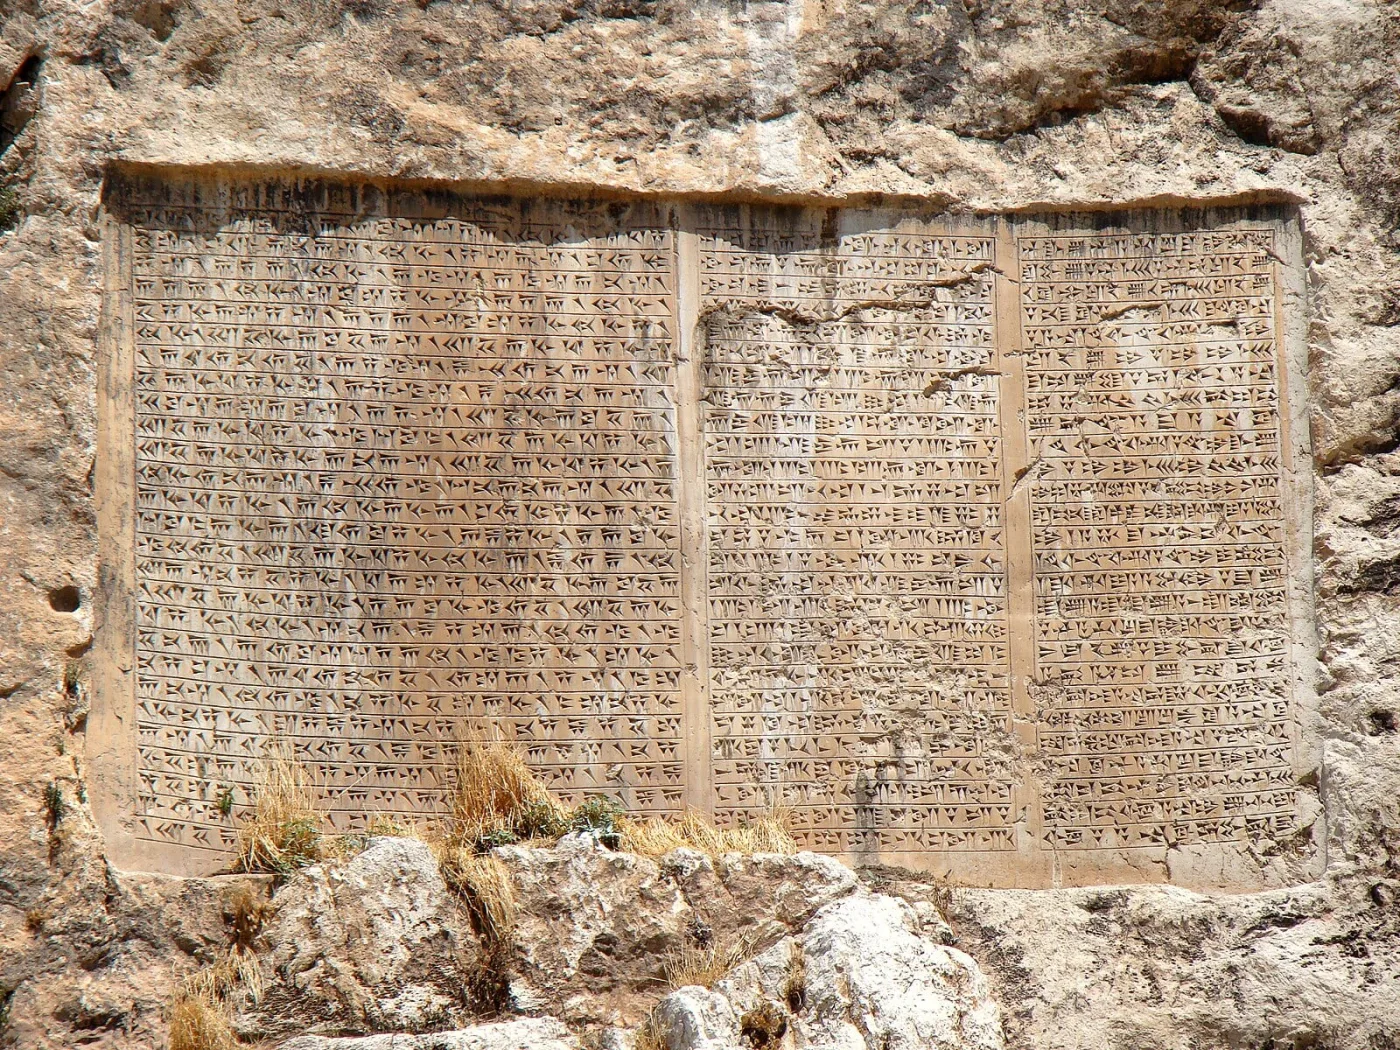 Trilingual cuneiform, inscription written in Old Persian